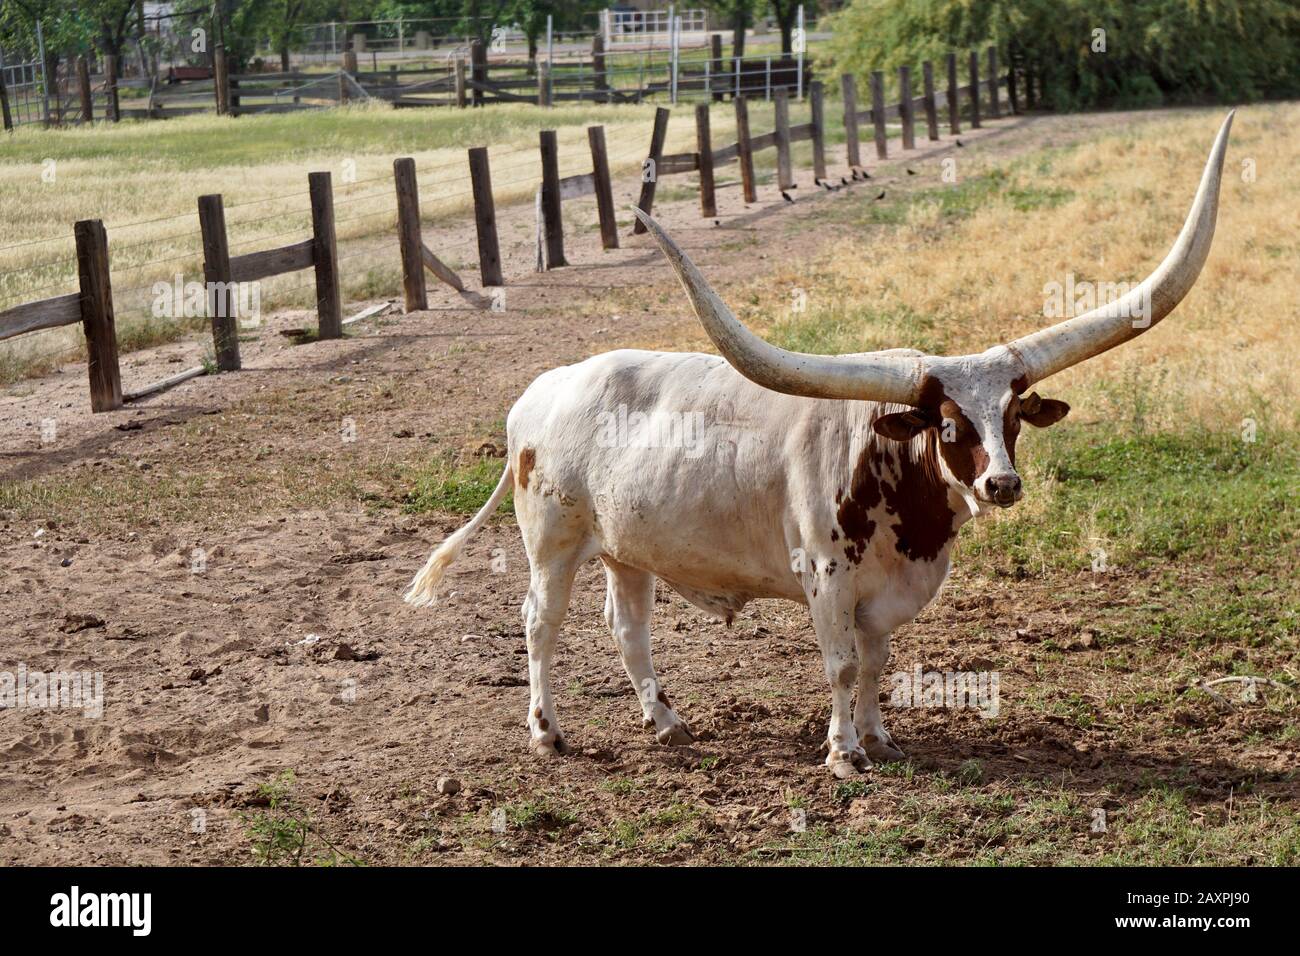 un taureau avec des cornes très longues se tient dans un champ sur une ferme. Banque D'Images